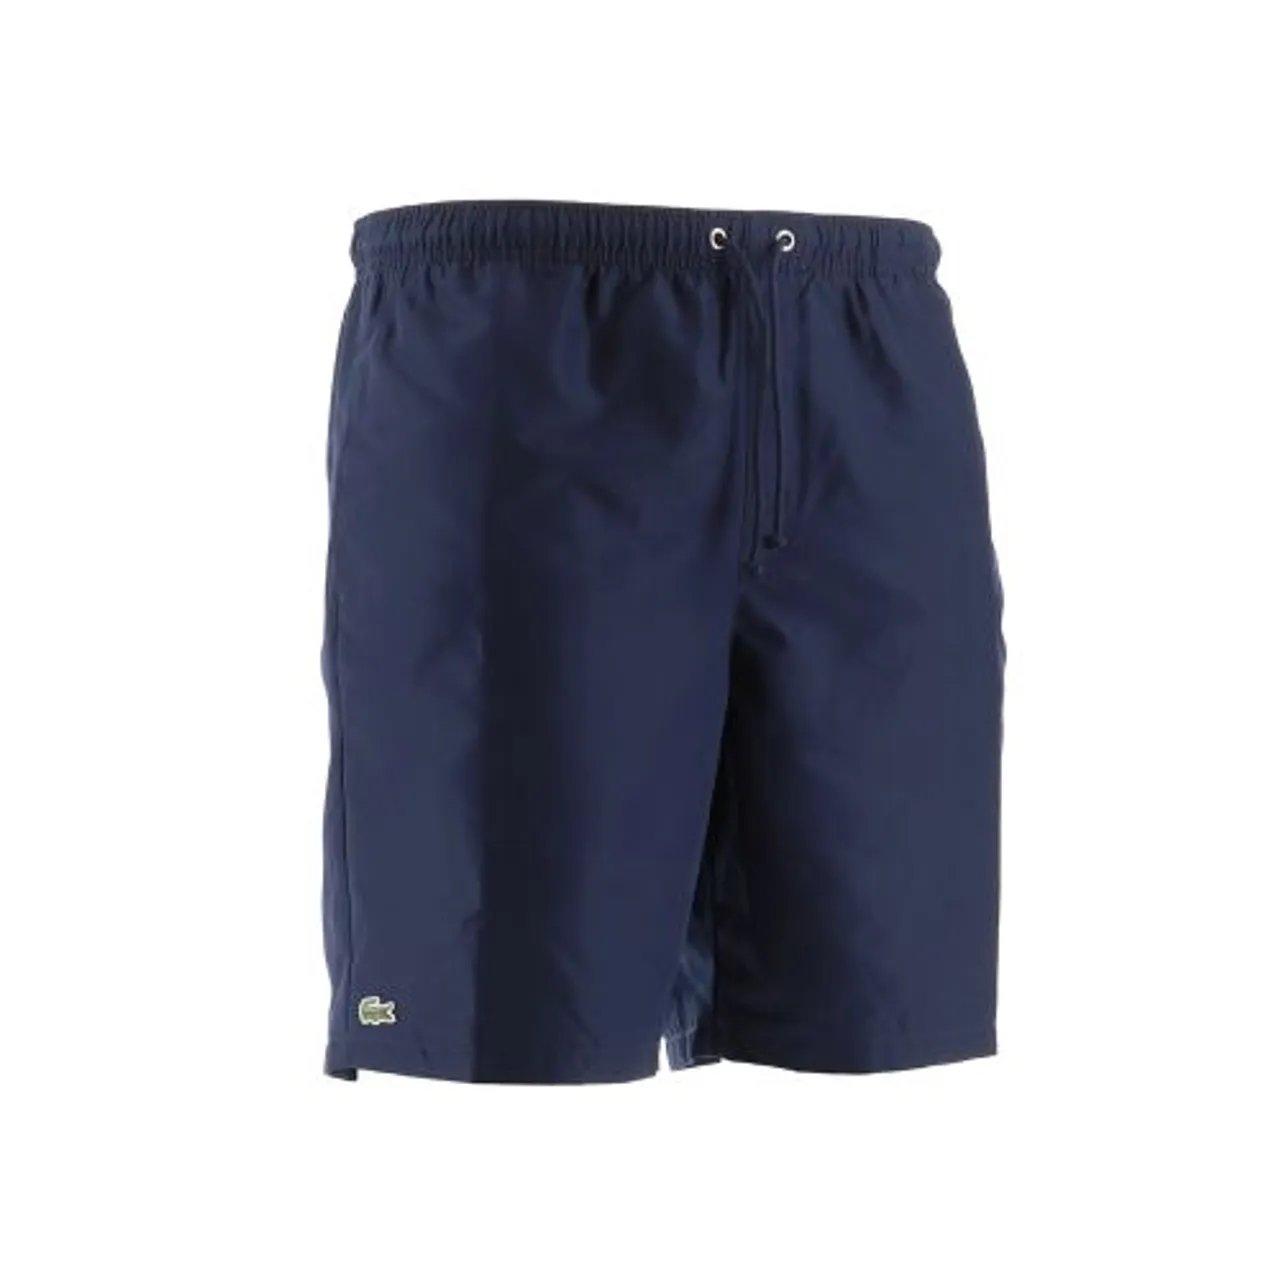 Lacoste Mens Navy Blue Tennis Short